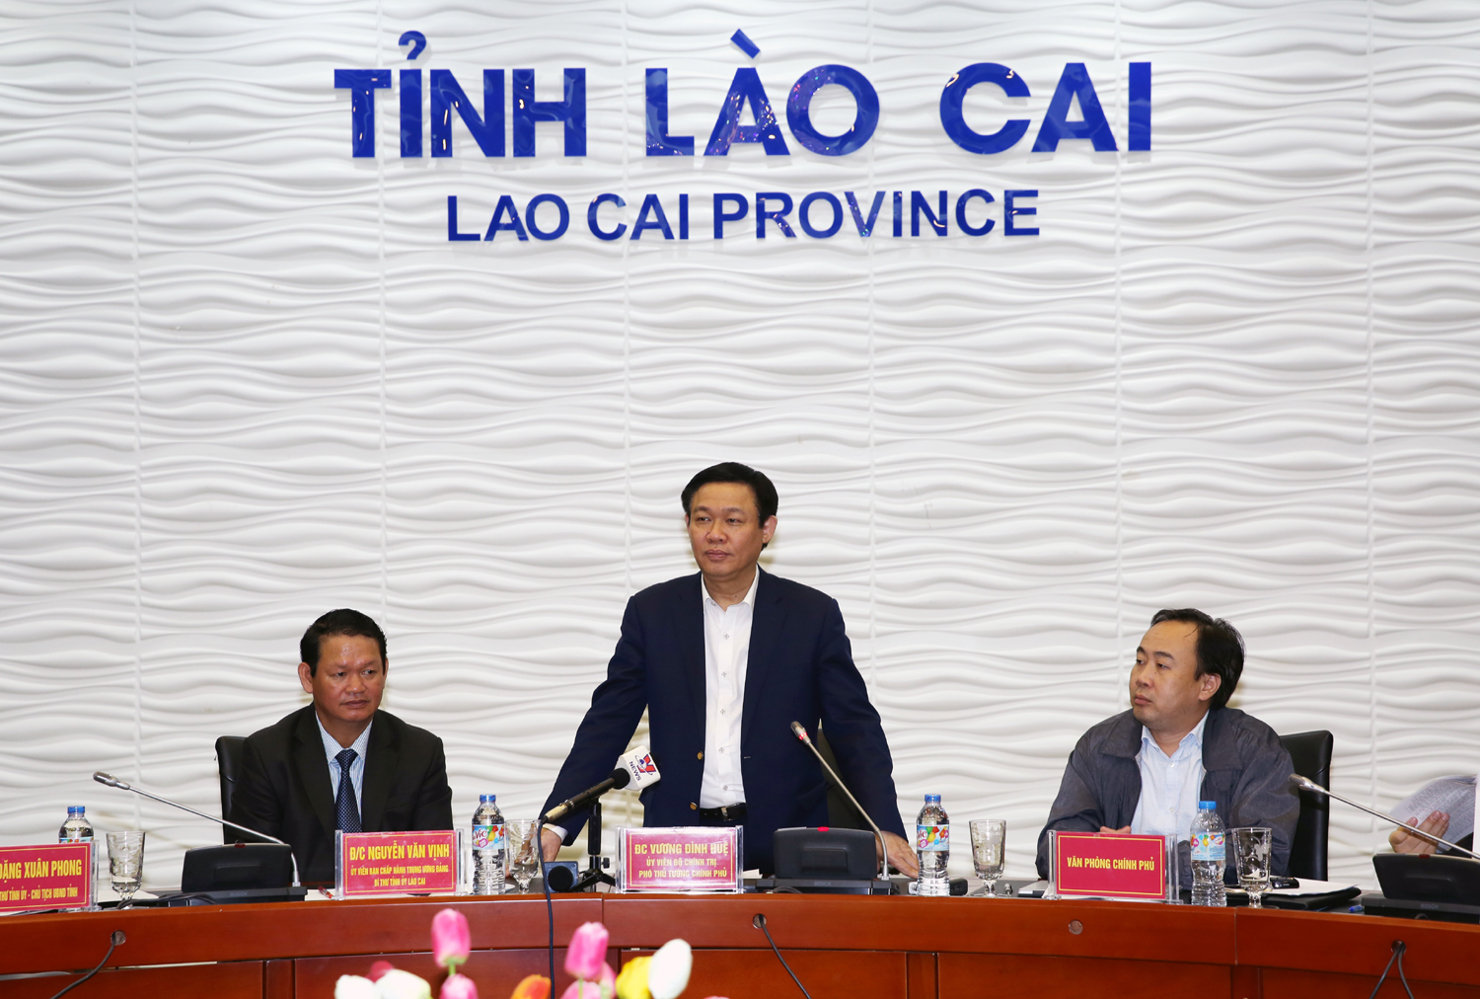 Phó Thủ tướng Vương Đình Huệ đề nghị Lào Cai cần sớm thu hút nhà đầu tư chiến lược vào thực hiện các dự án du lịch tại Sa Pa cũng như cảng hàng không Lào Cai. Nguồn: chinhphu.vn